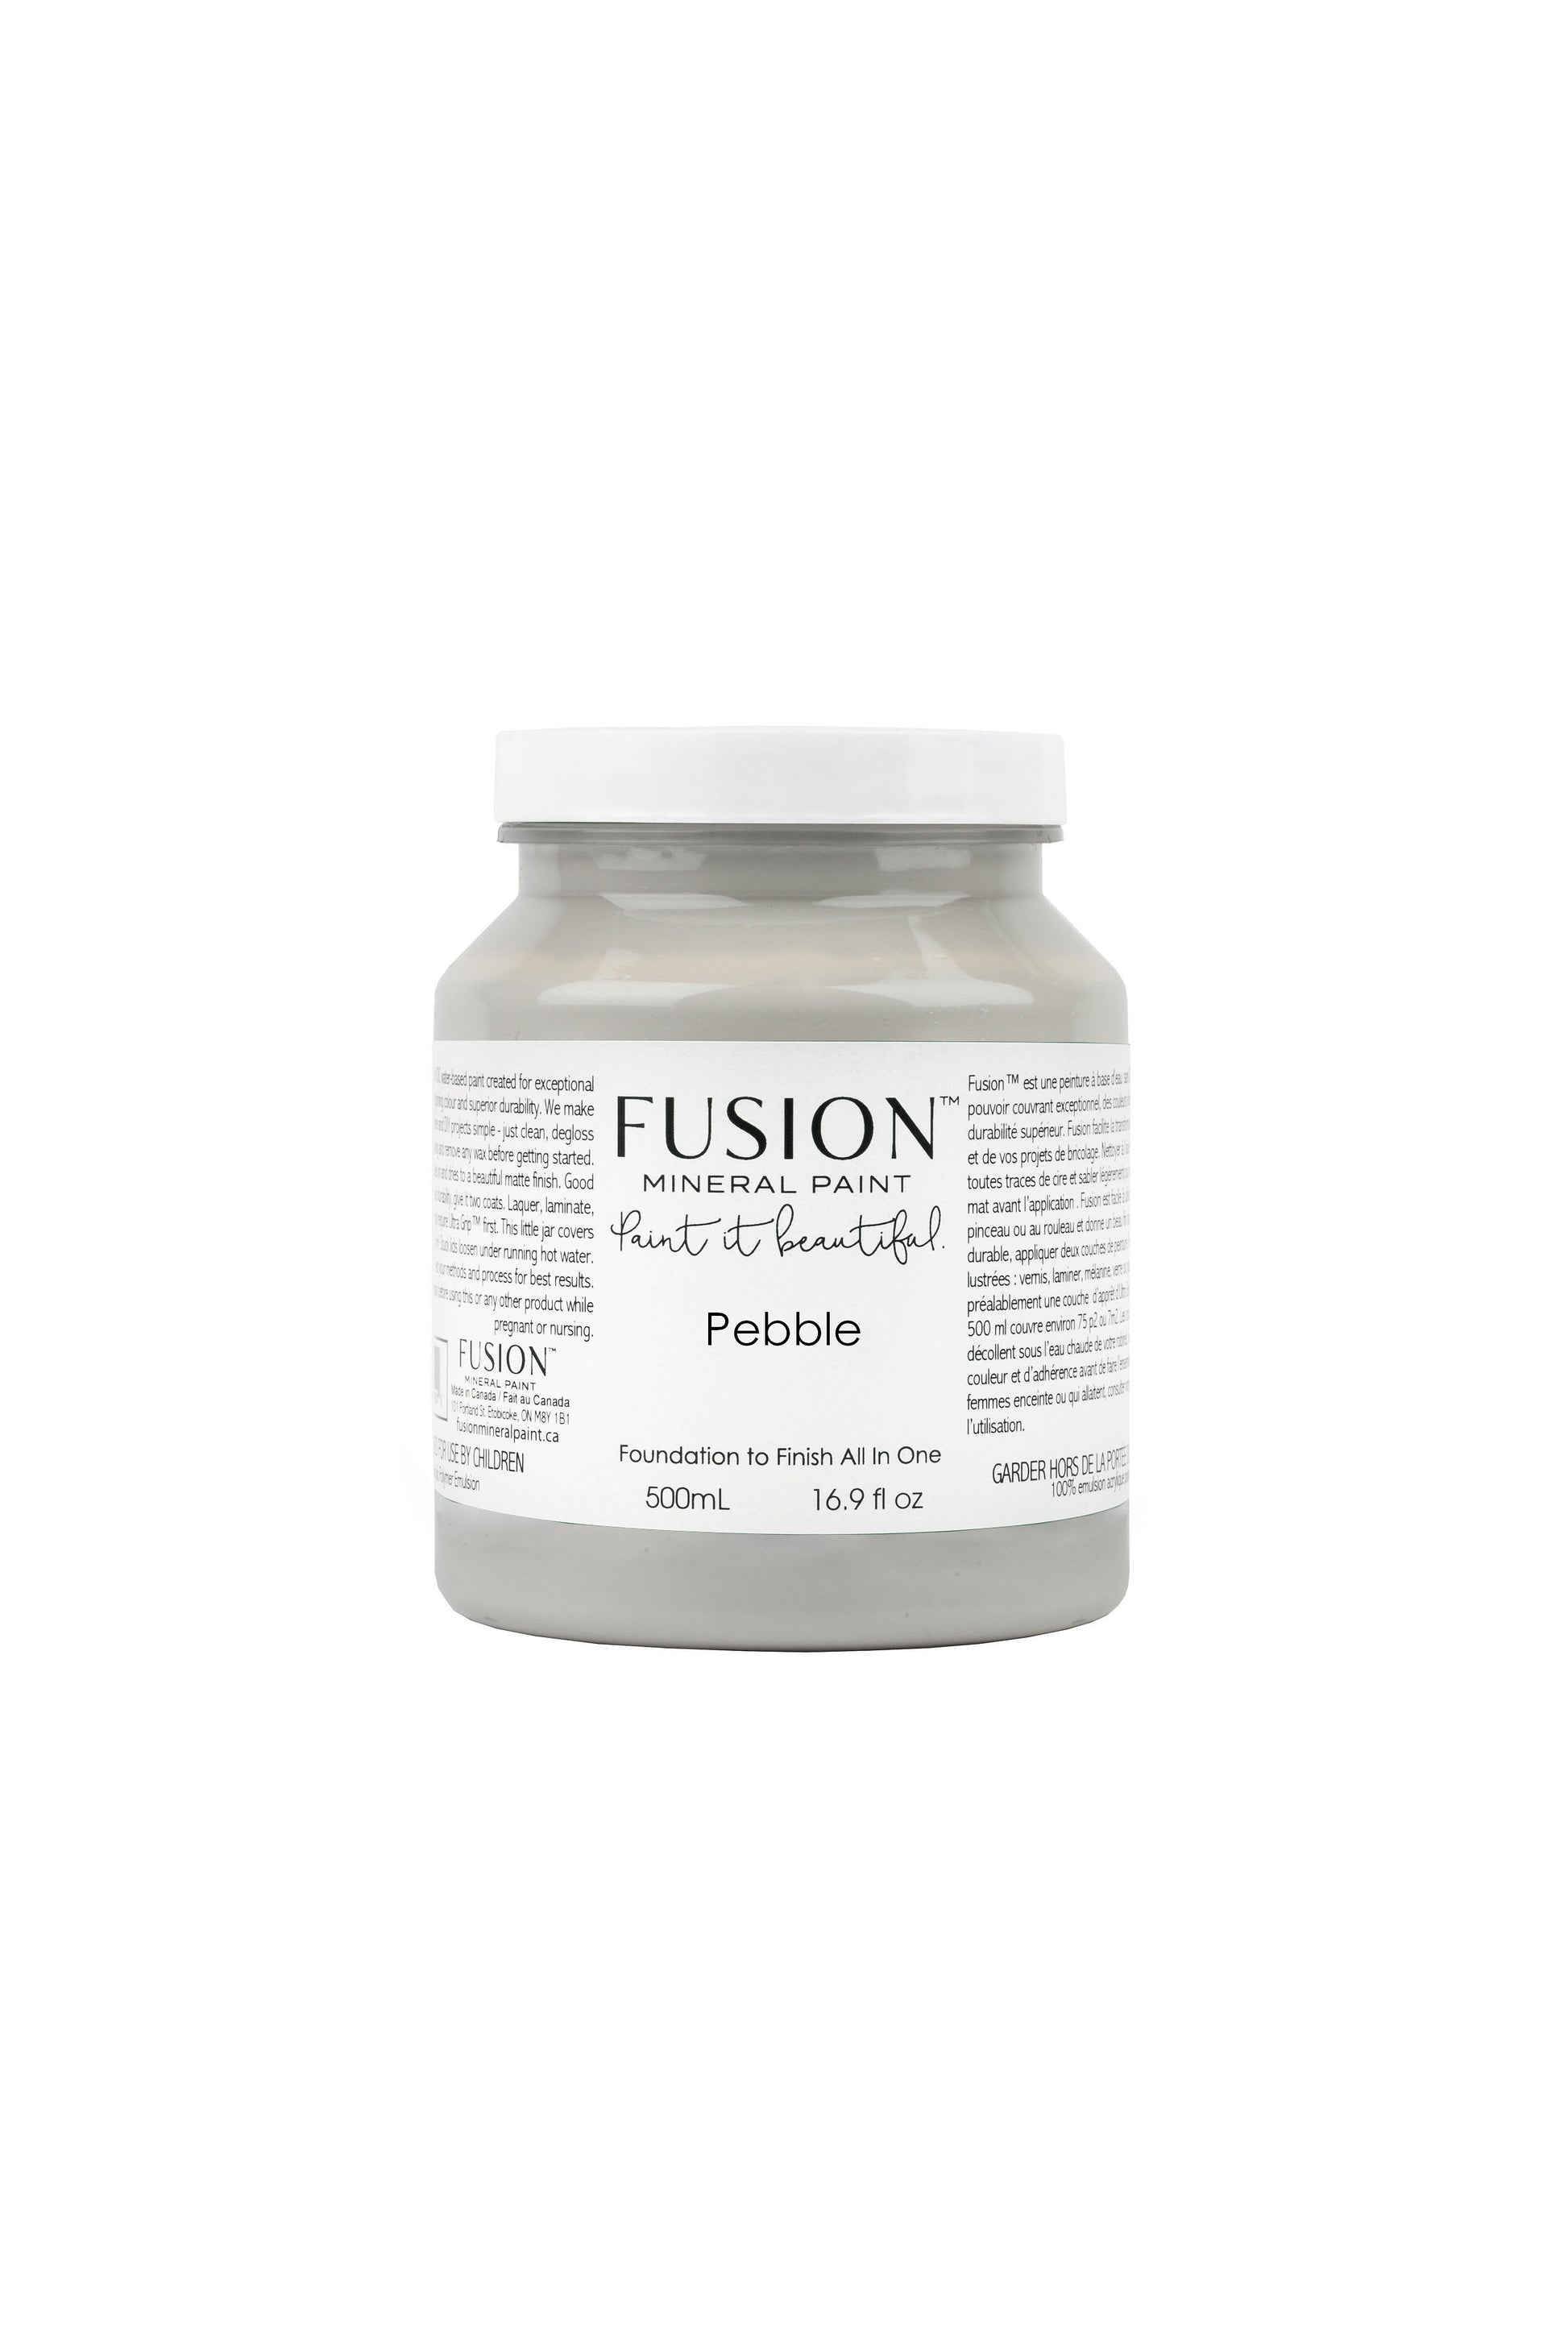 Pebble Fusion Mineral Paint, Grey Paint Color| 500ml Pint Size